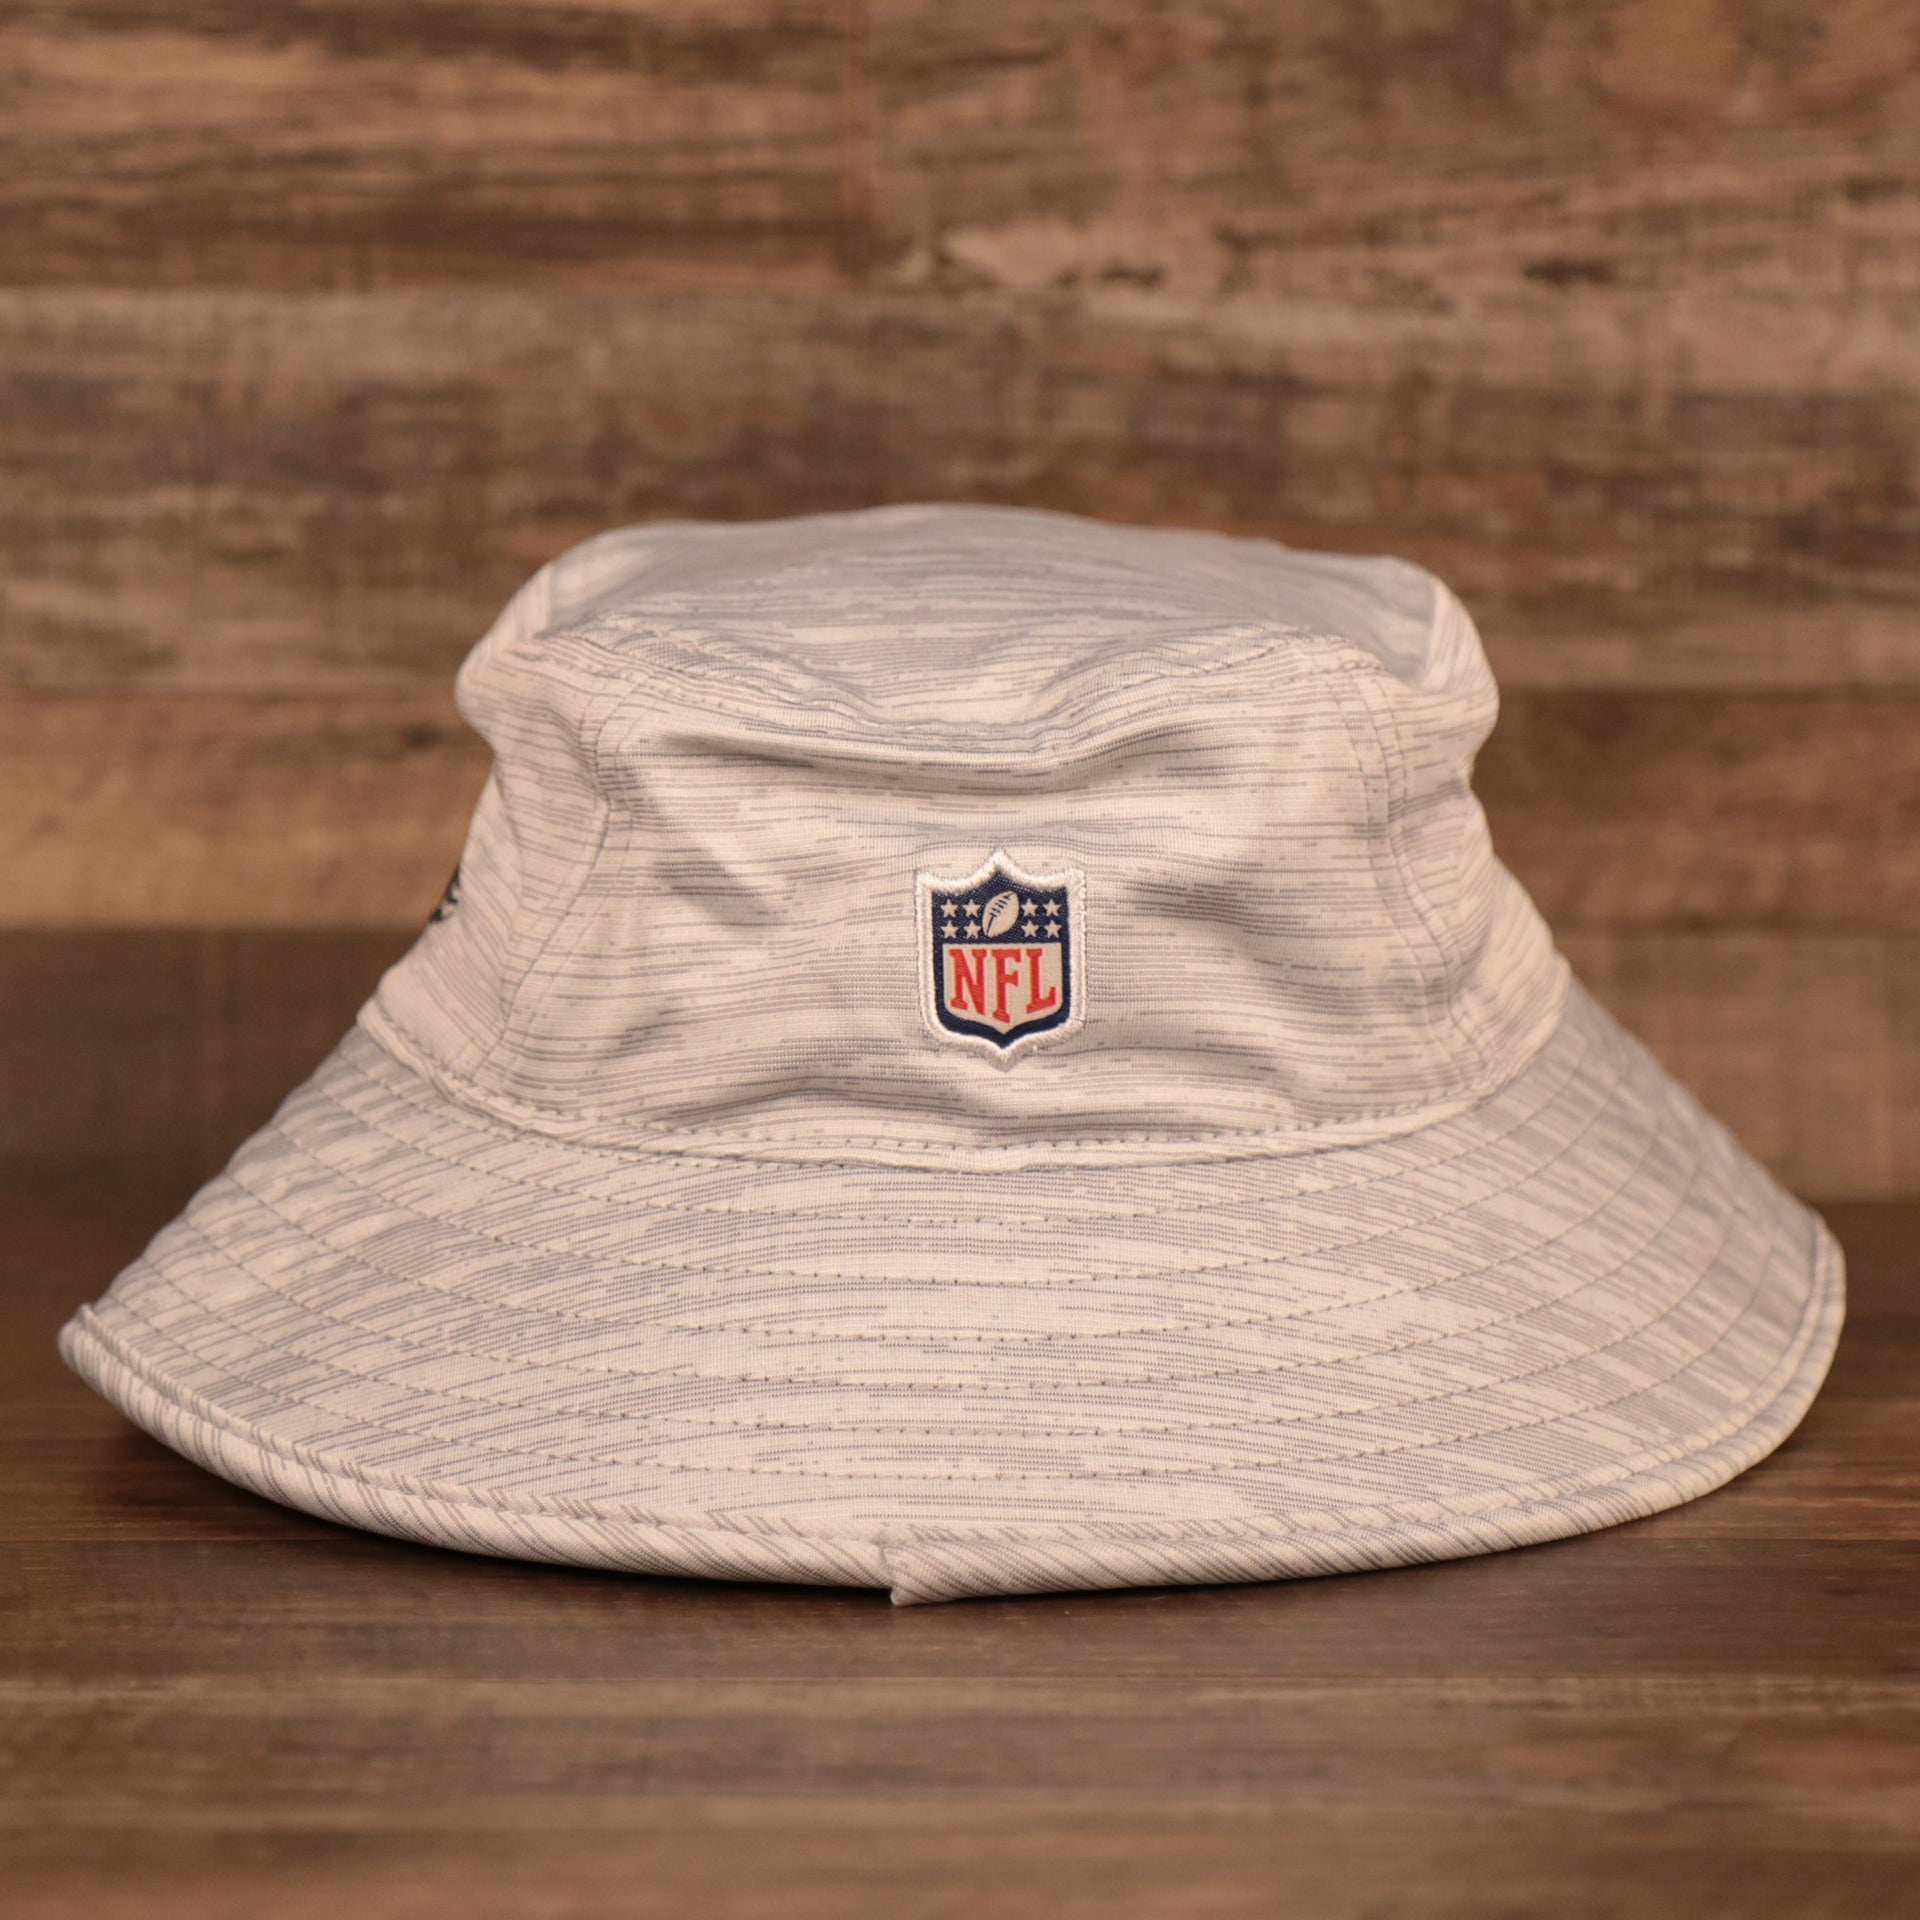 The NFL logo on the back of gray New Era 2021 nfl training atlanta falcons bucket hat.